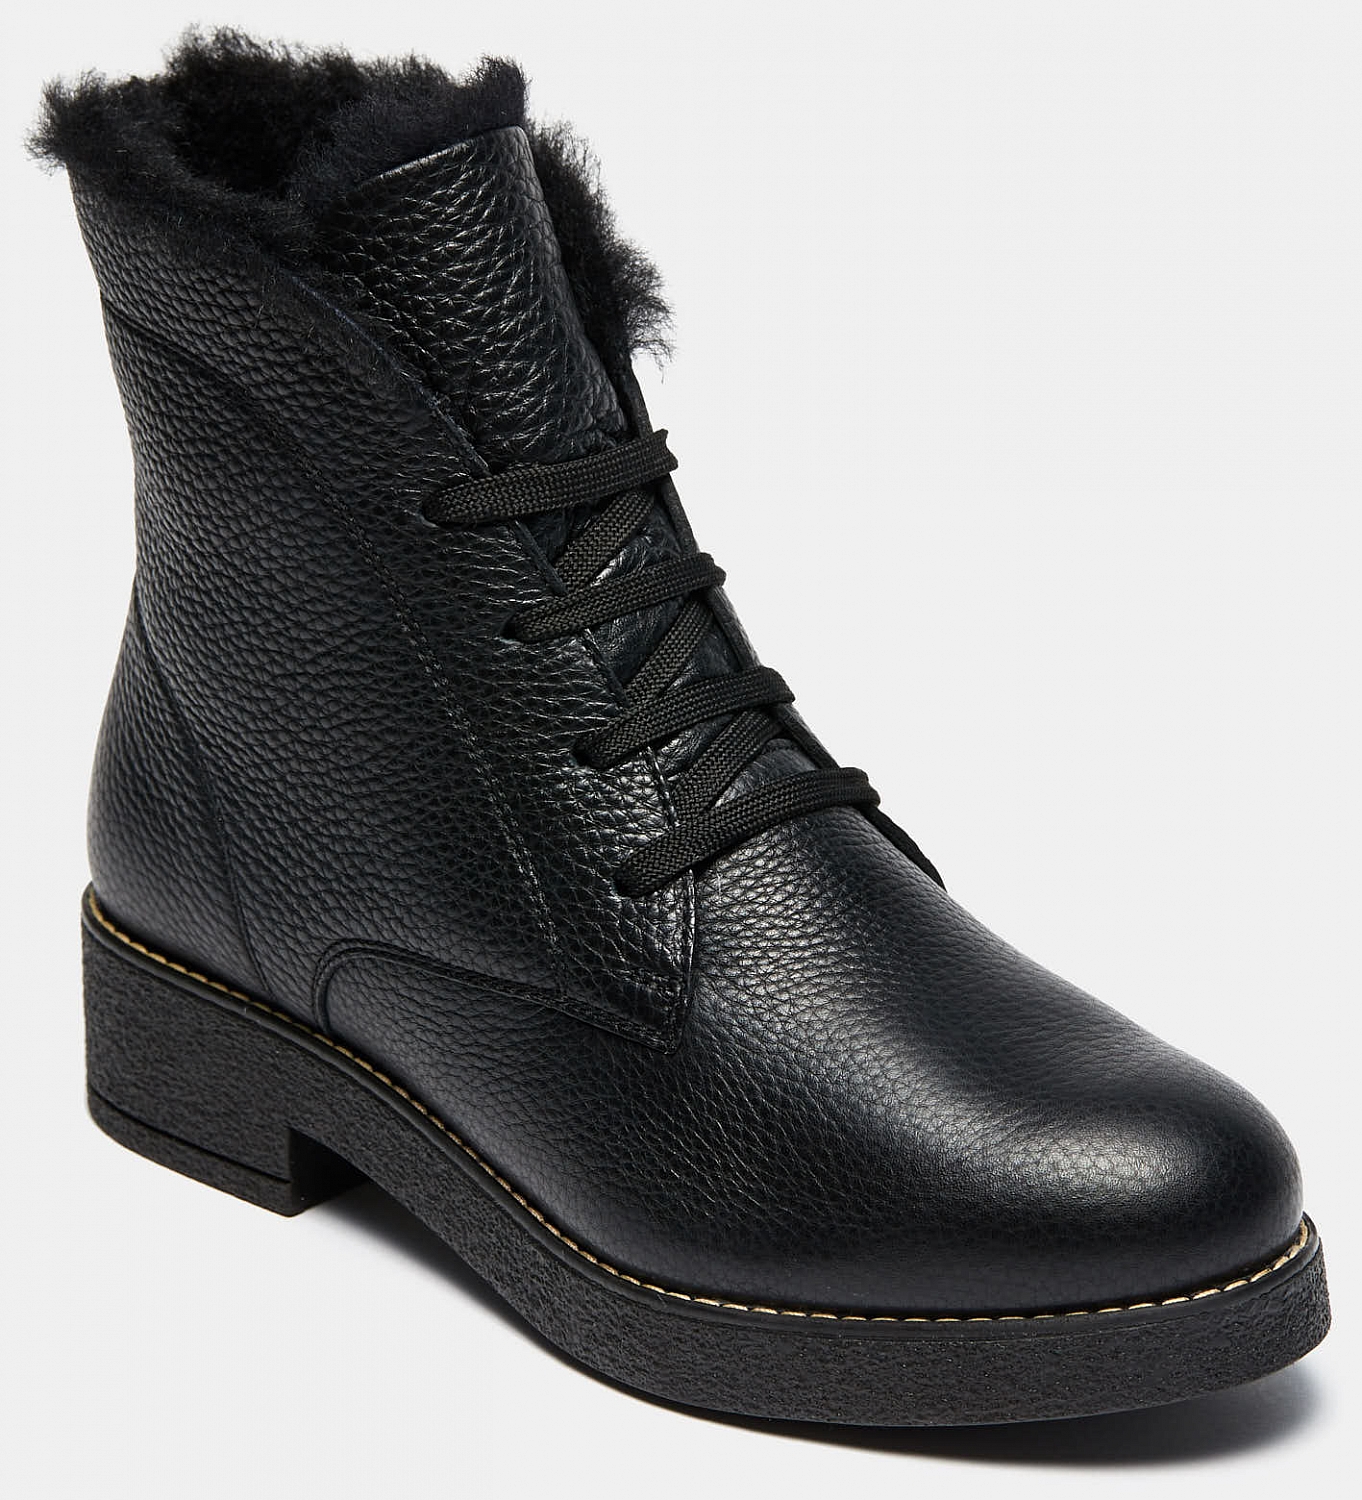 Ботинки женские ALFA (цвет черный, натуральная кожа) — купить по цене 7350  р. в интернет-магазине RALF RINGER | Стильная женская обувь в Москве